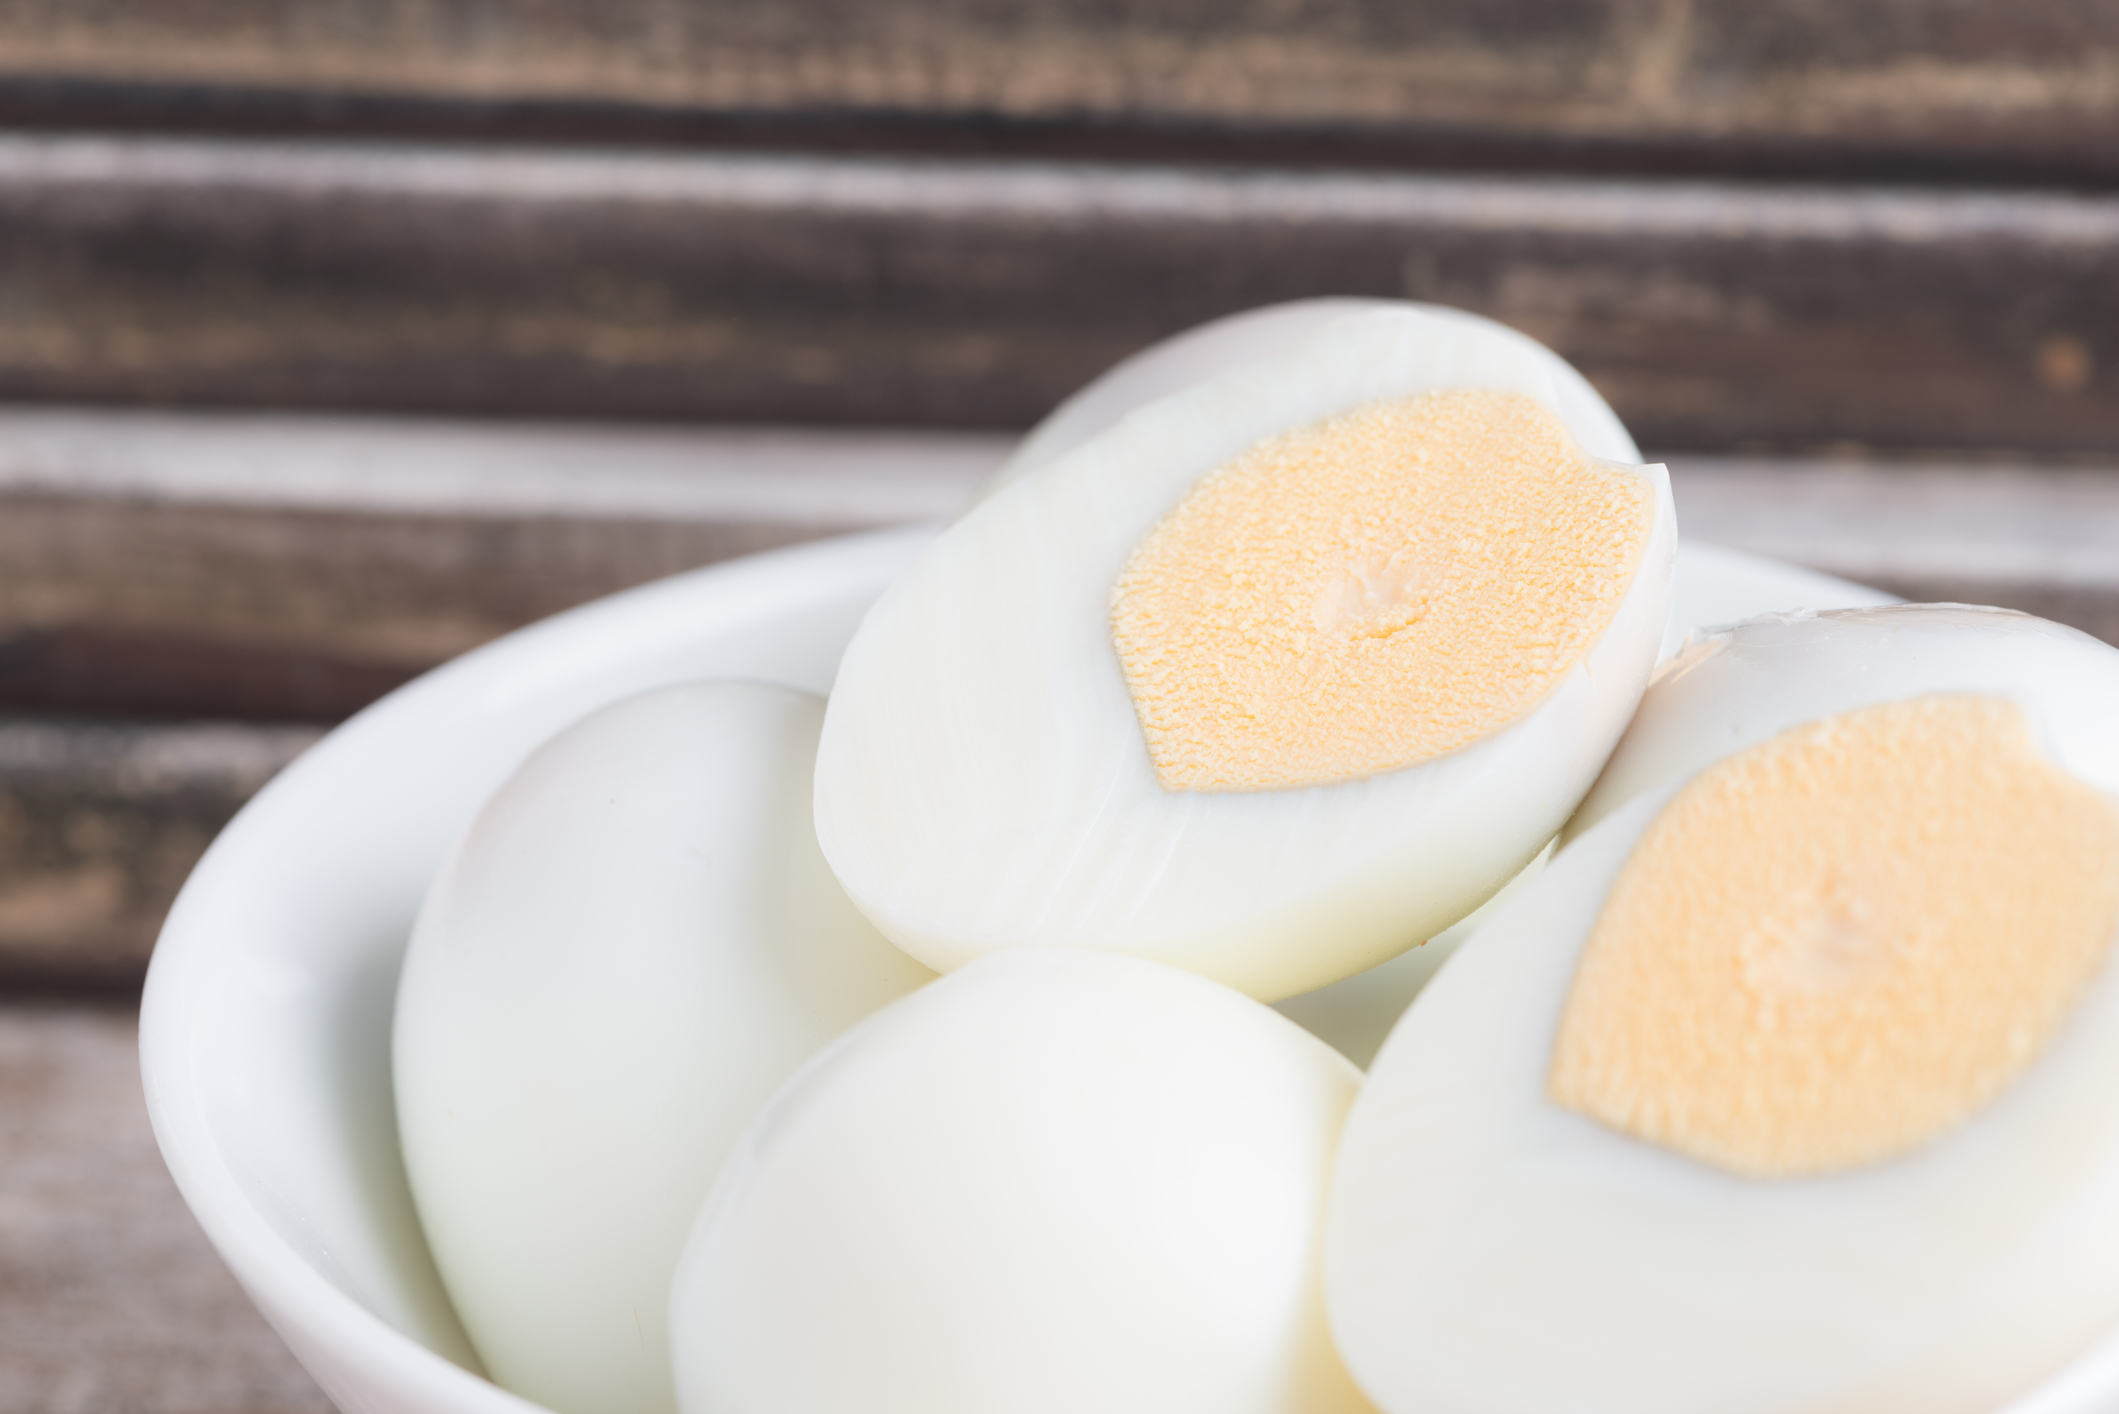 europa lanza una seria advertencia sanitaria a españa por los huevos cocidos